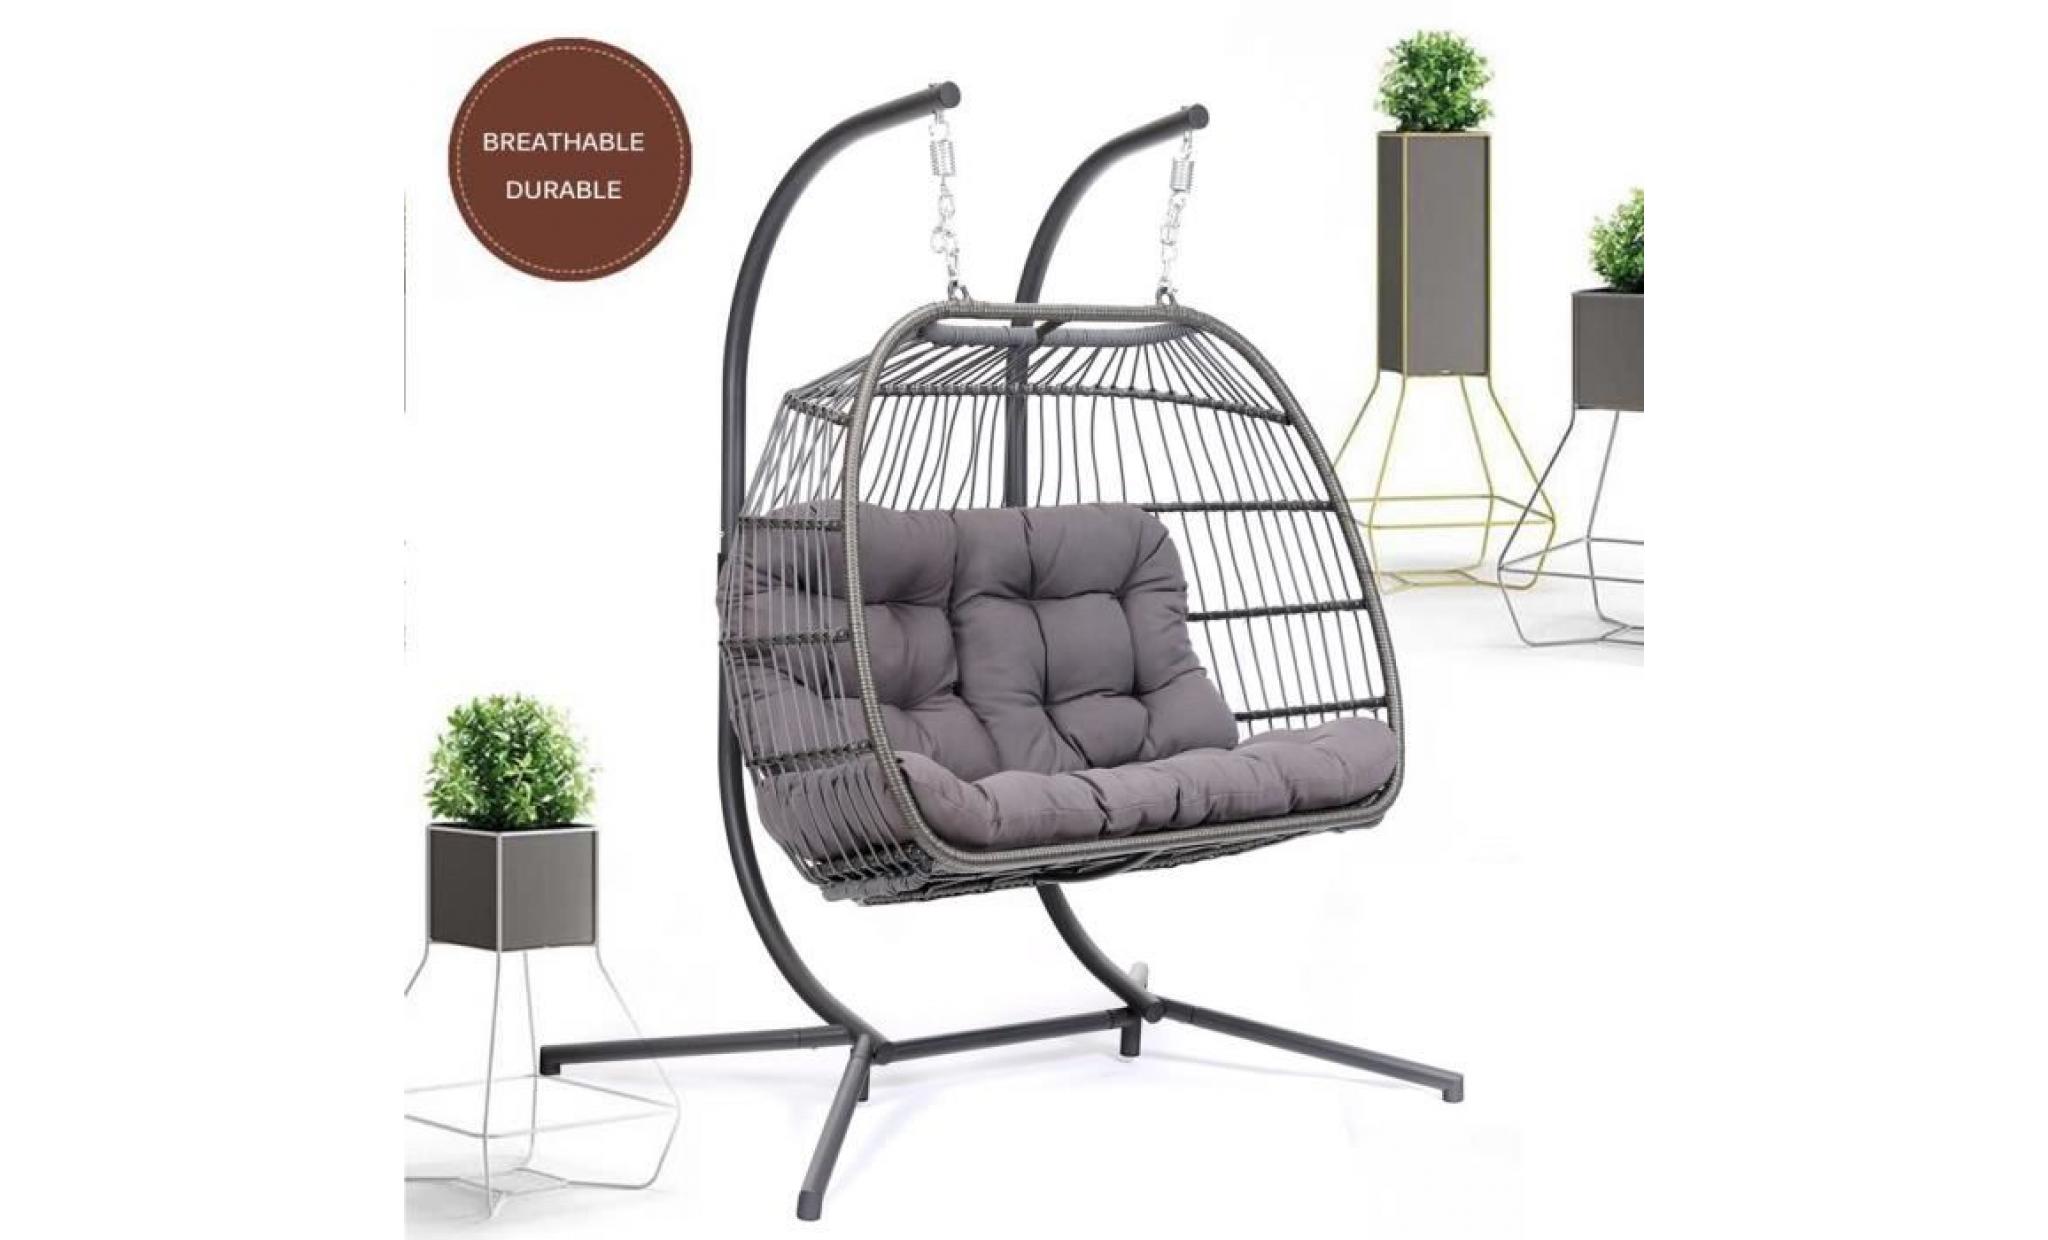 confortable chaise suspendue nordique de panier pour deux personnes 1520 * 1170 * 1980mm en aluminium et fer et éponge pas cher